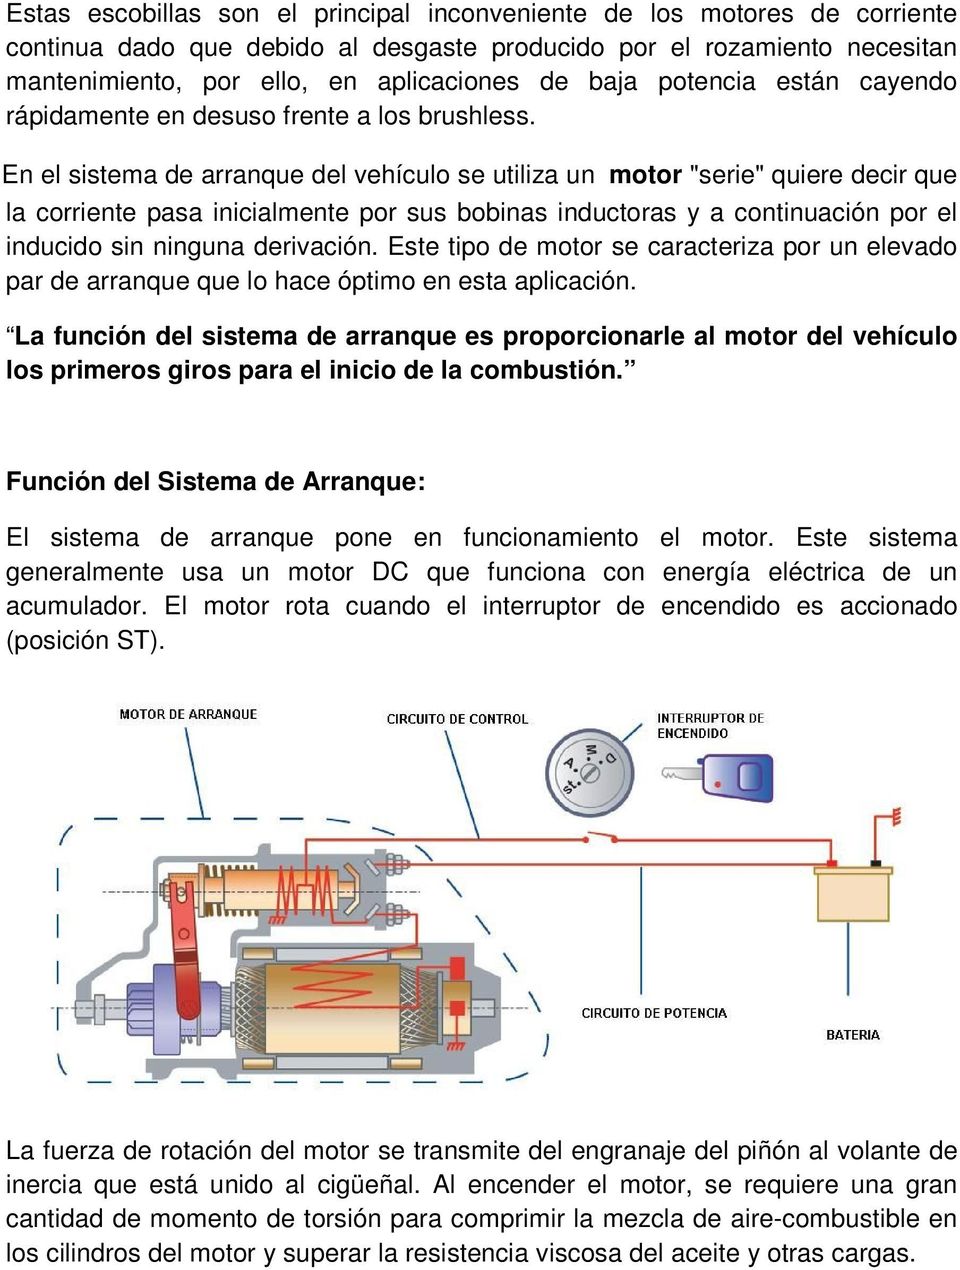 En el sistema de arranque del vehículo se utiliza un motor "serie" quiere decir que la corriente pasa inicialmente por sus bobinas inductoras y a continuación por el inducido sin ninguna derivación.